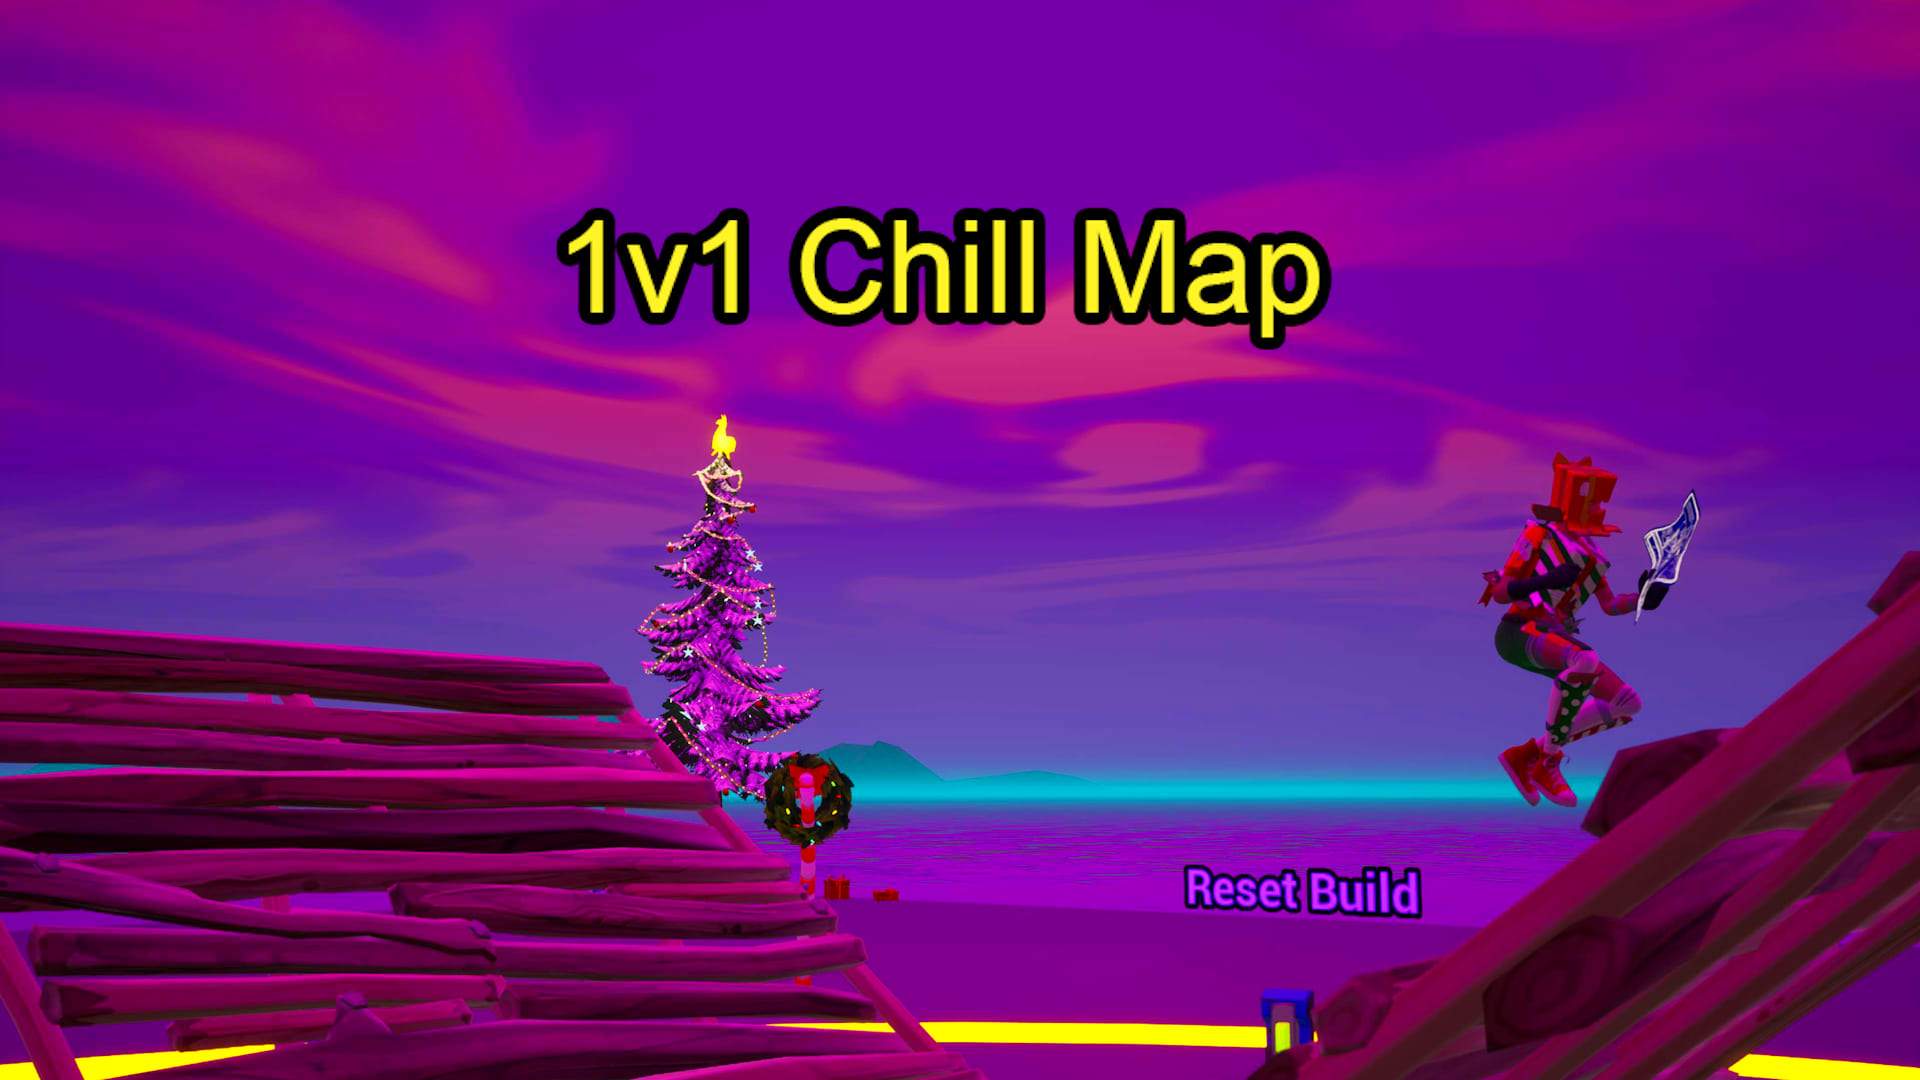 1v1 Chill Map